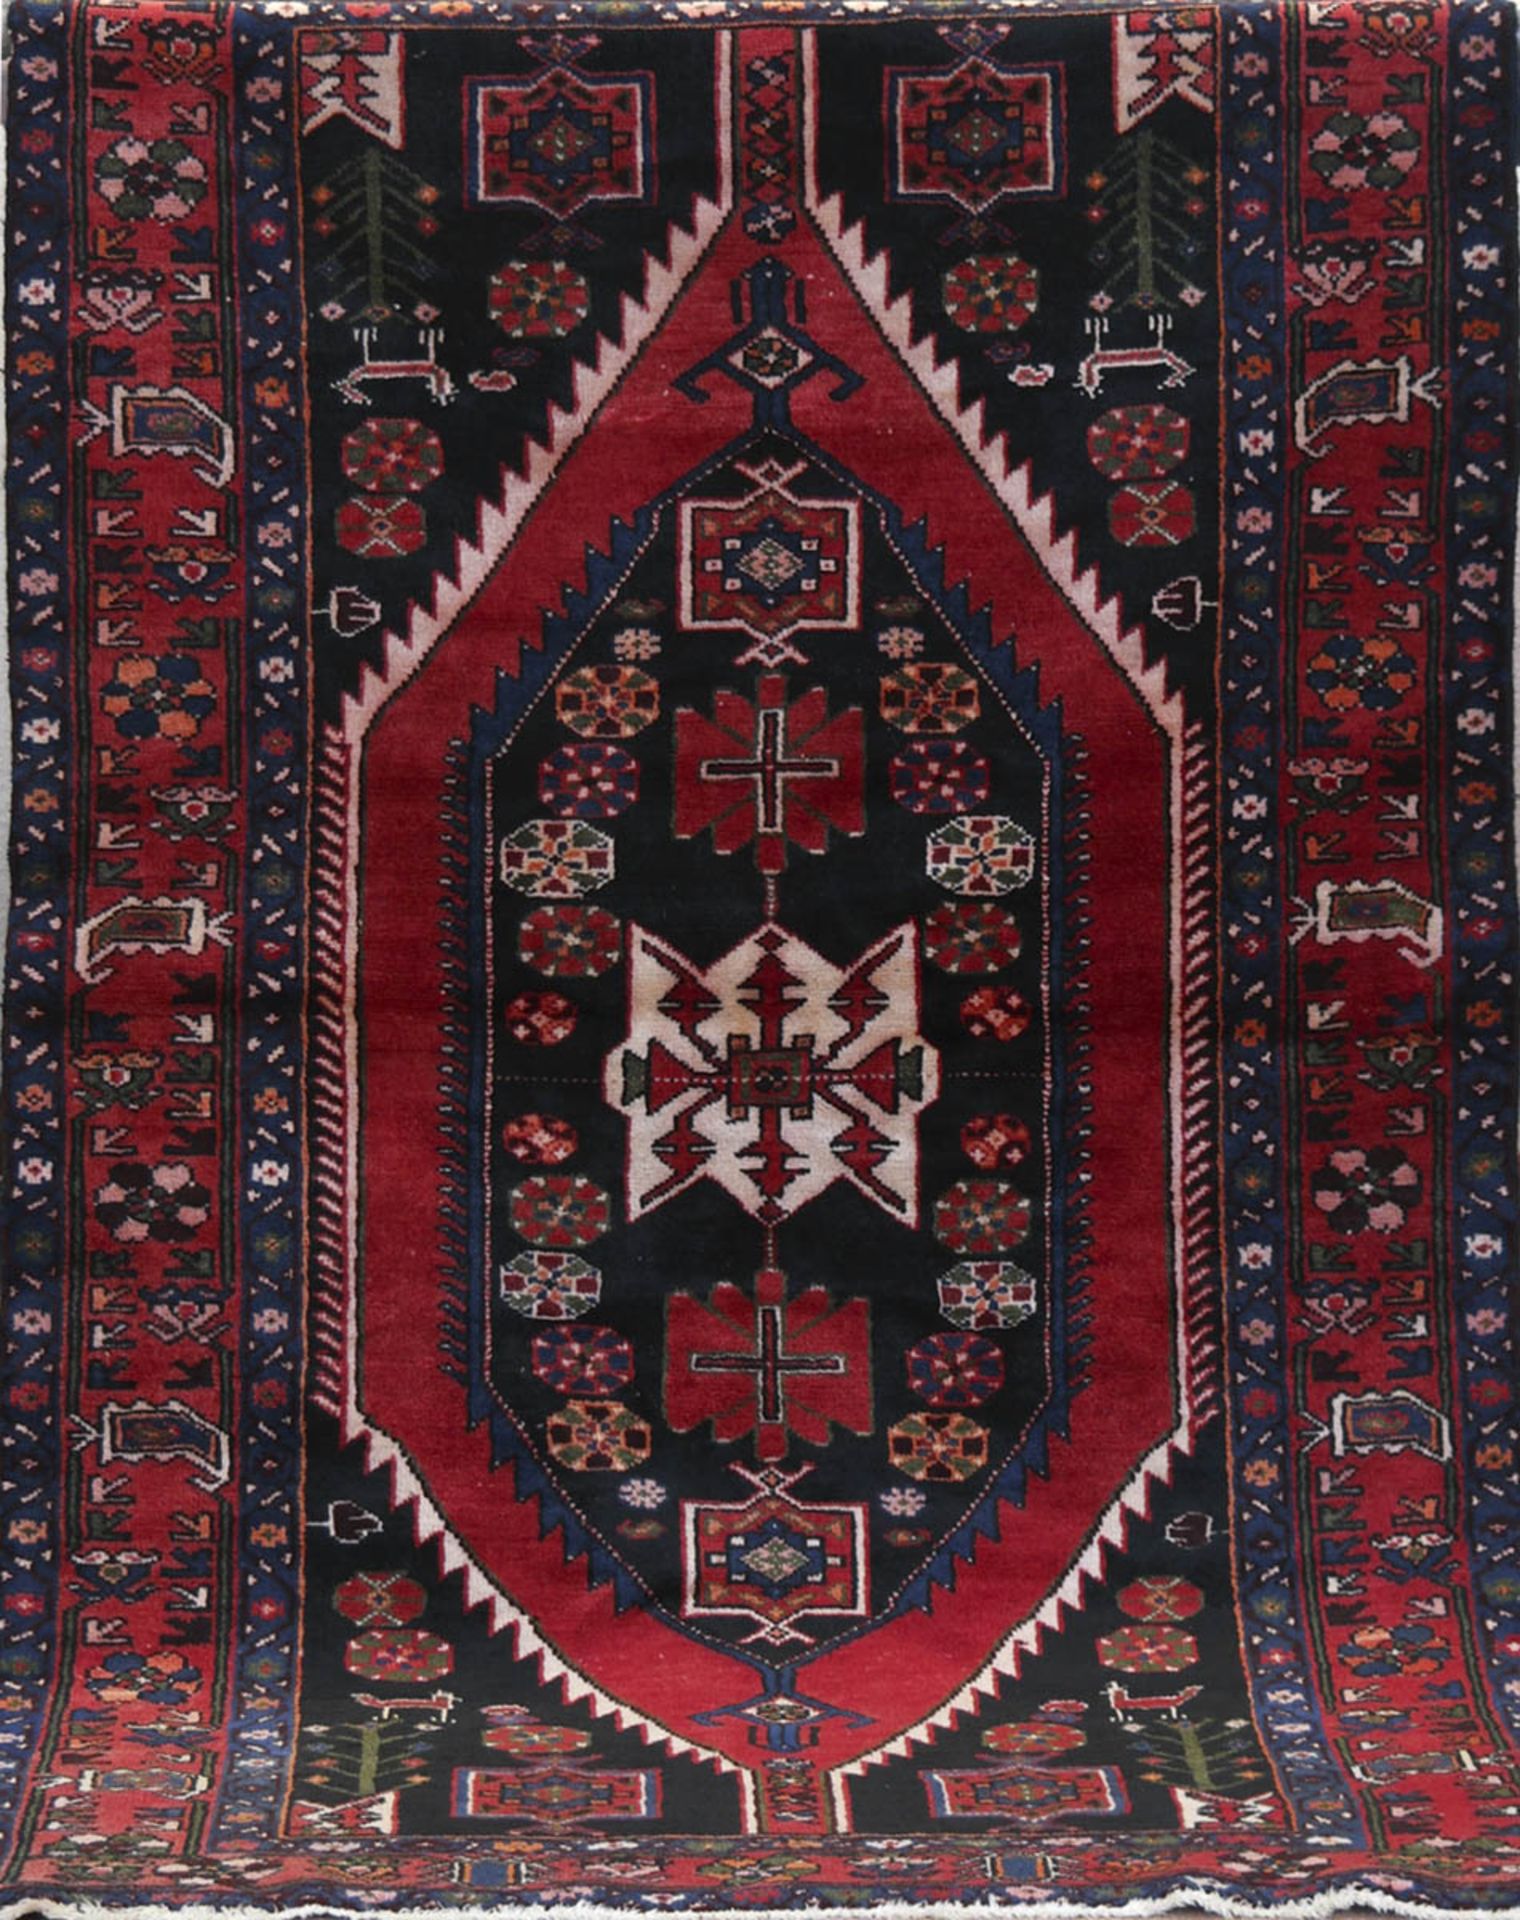 Alter Shiraz, rot-/ blaugrundig, mit zentralem Medaillon und floralen Motiven, 3 Kantenbesch.,